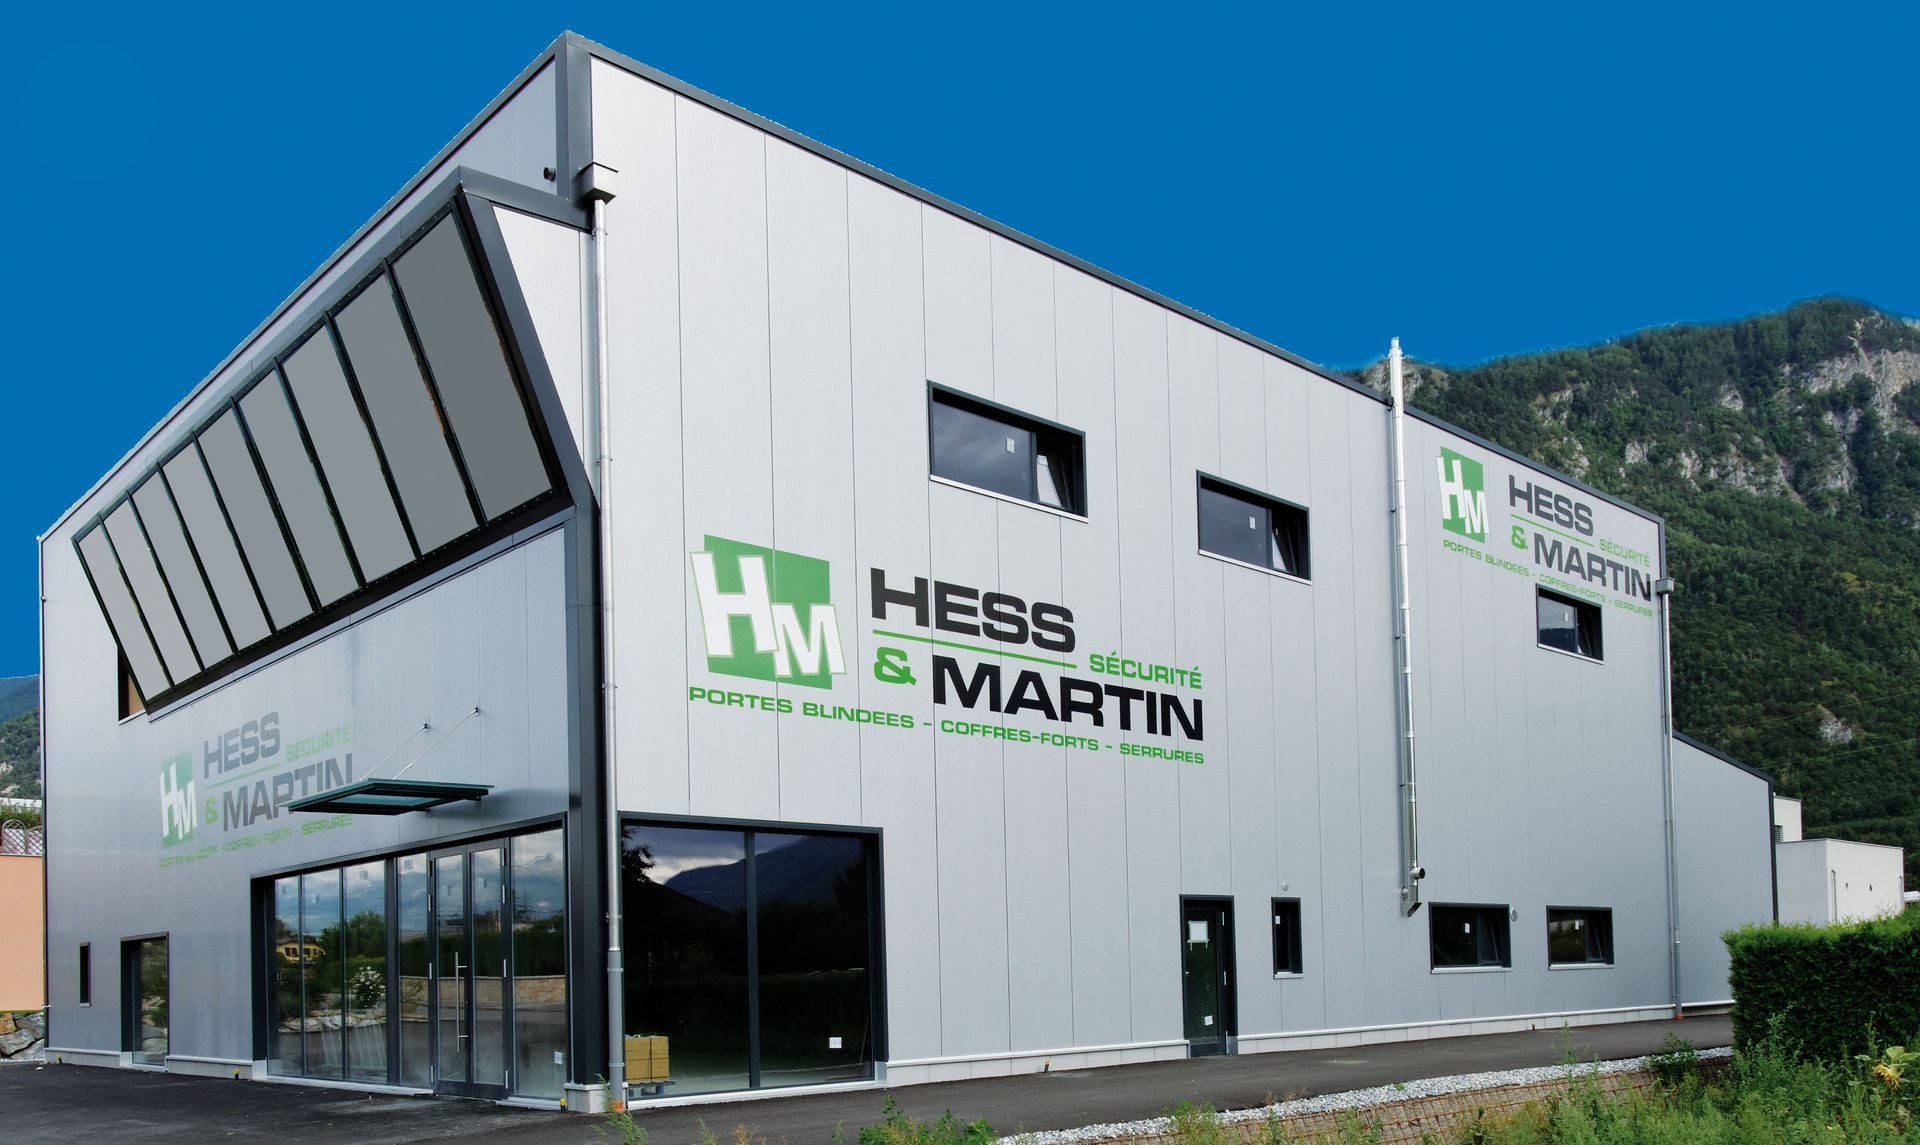 Présentation et histoire de notre entreprise - Hess & Martin Sécurité